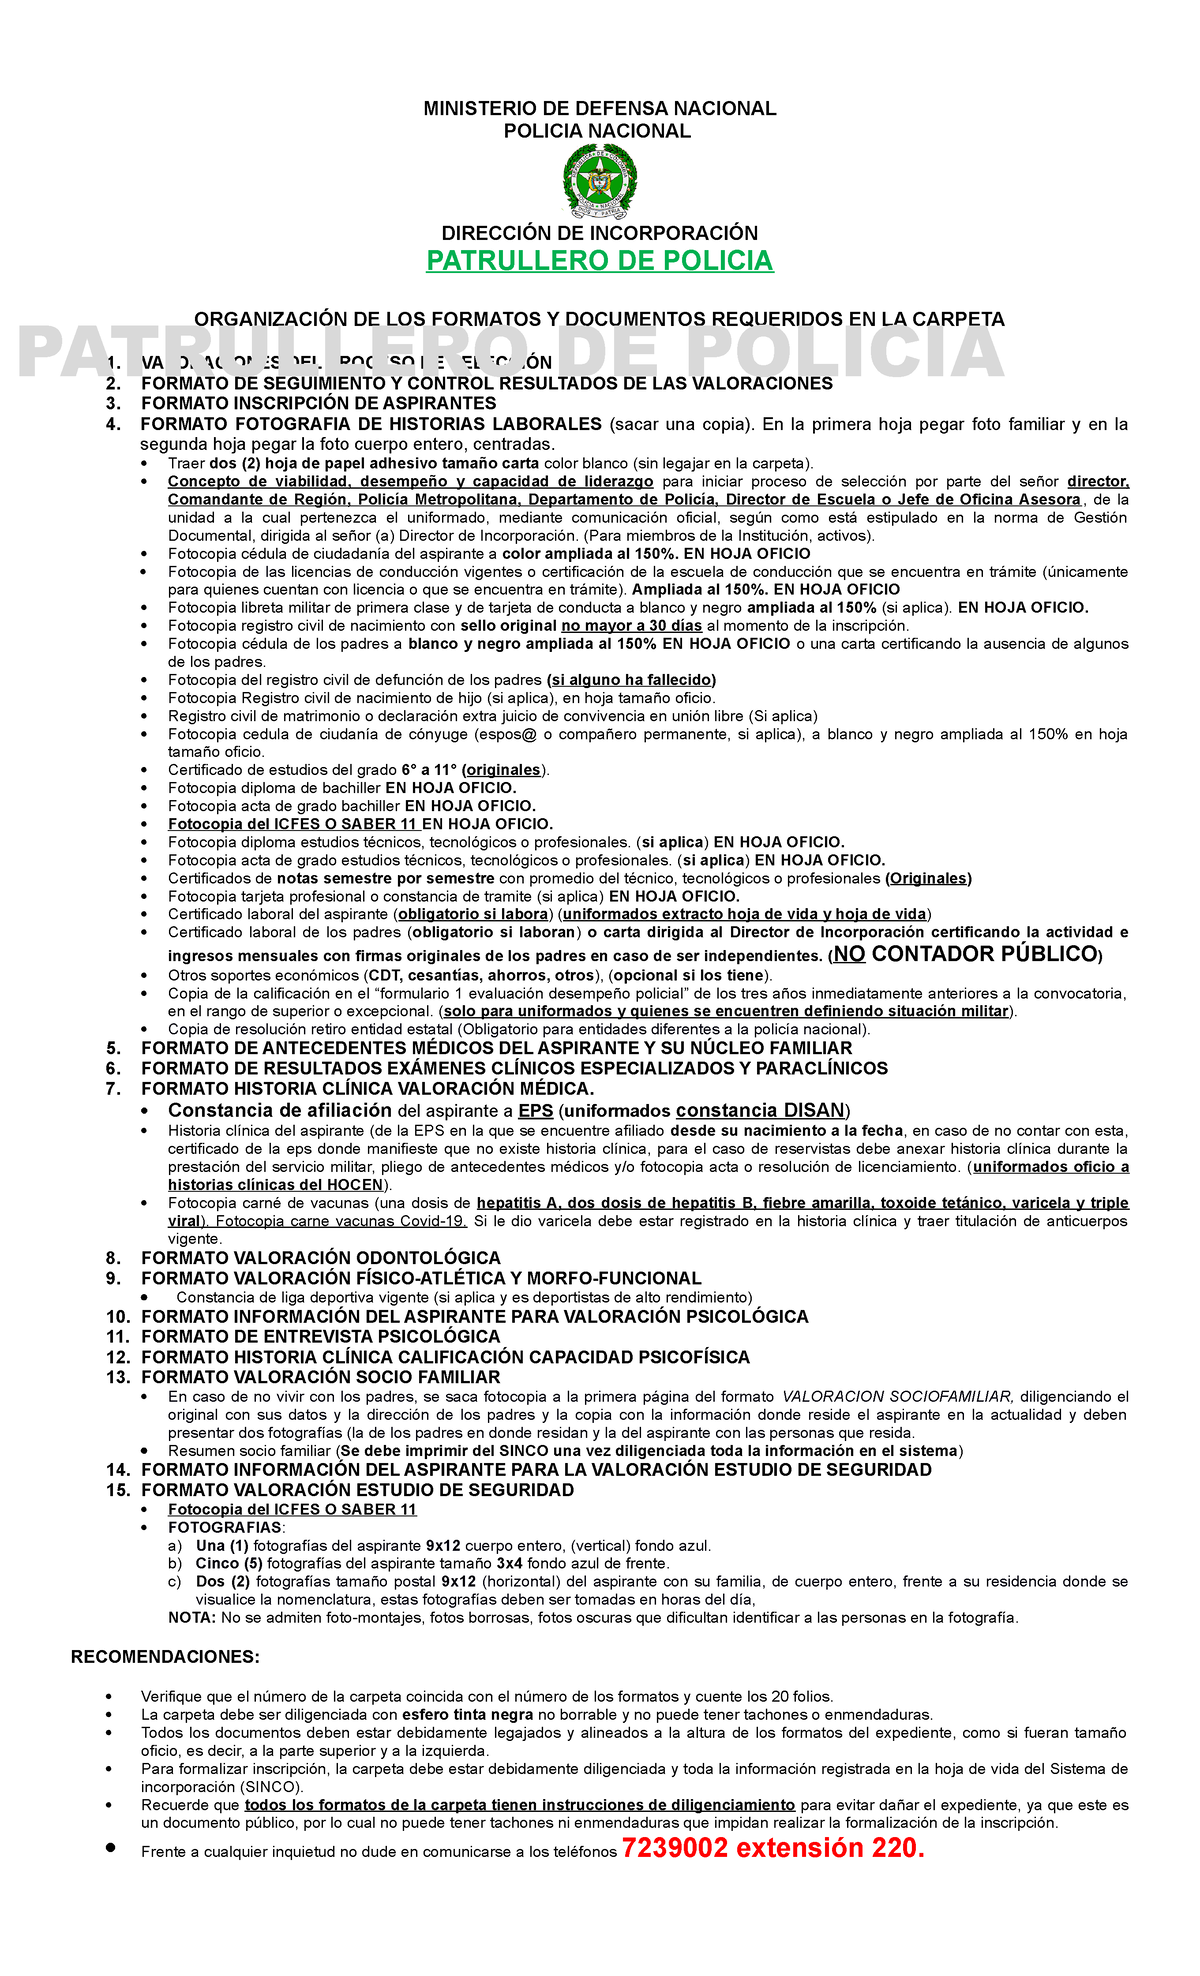 Documentación Patrullero de Policia 2022 - MINISTERIO DE DEFENSA NACIONAL  POLICIA NACIONAL DIRECCIÓN - Studocu